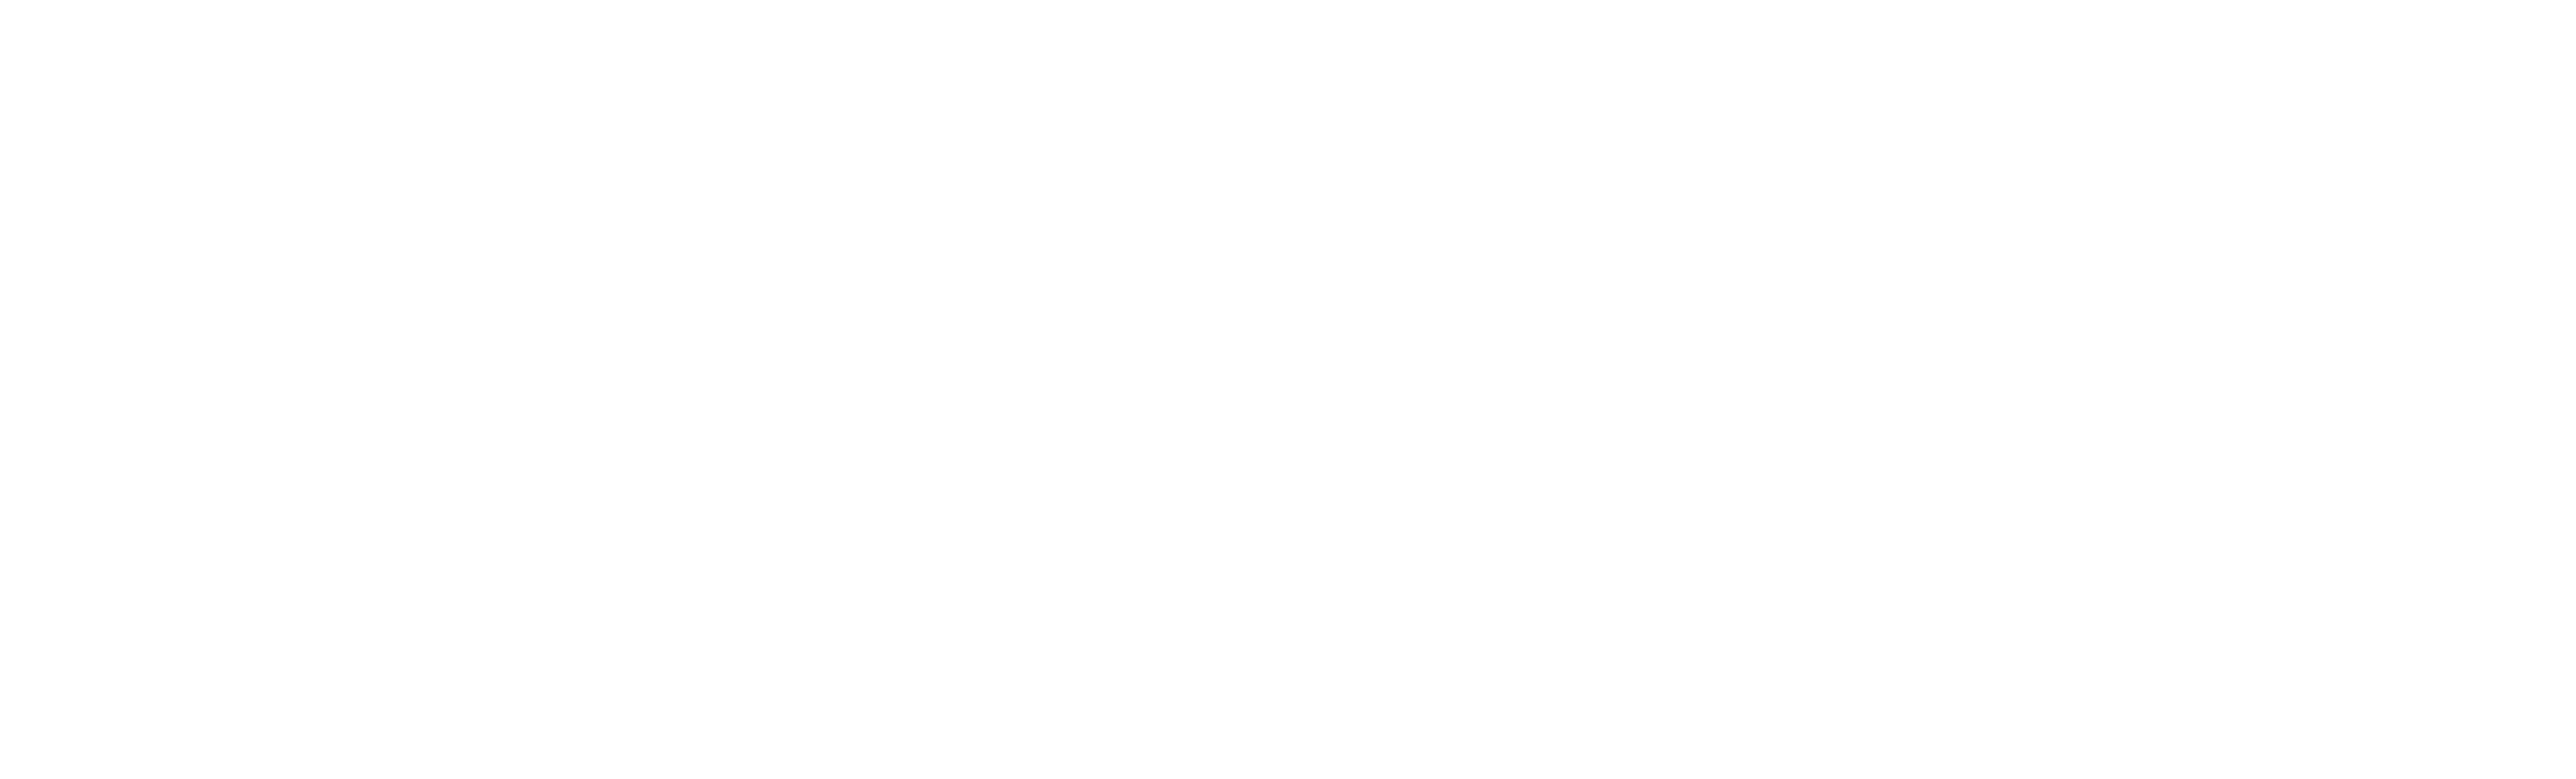 Early-white-logo-Webdesign-131